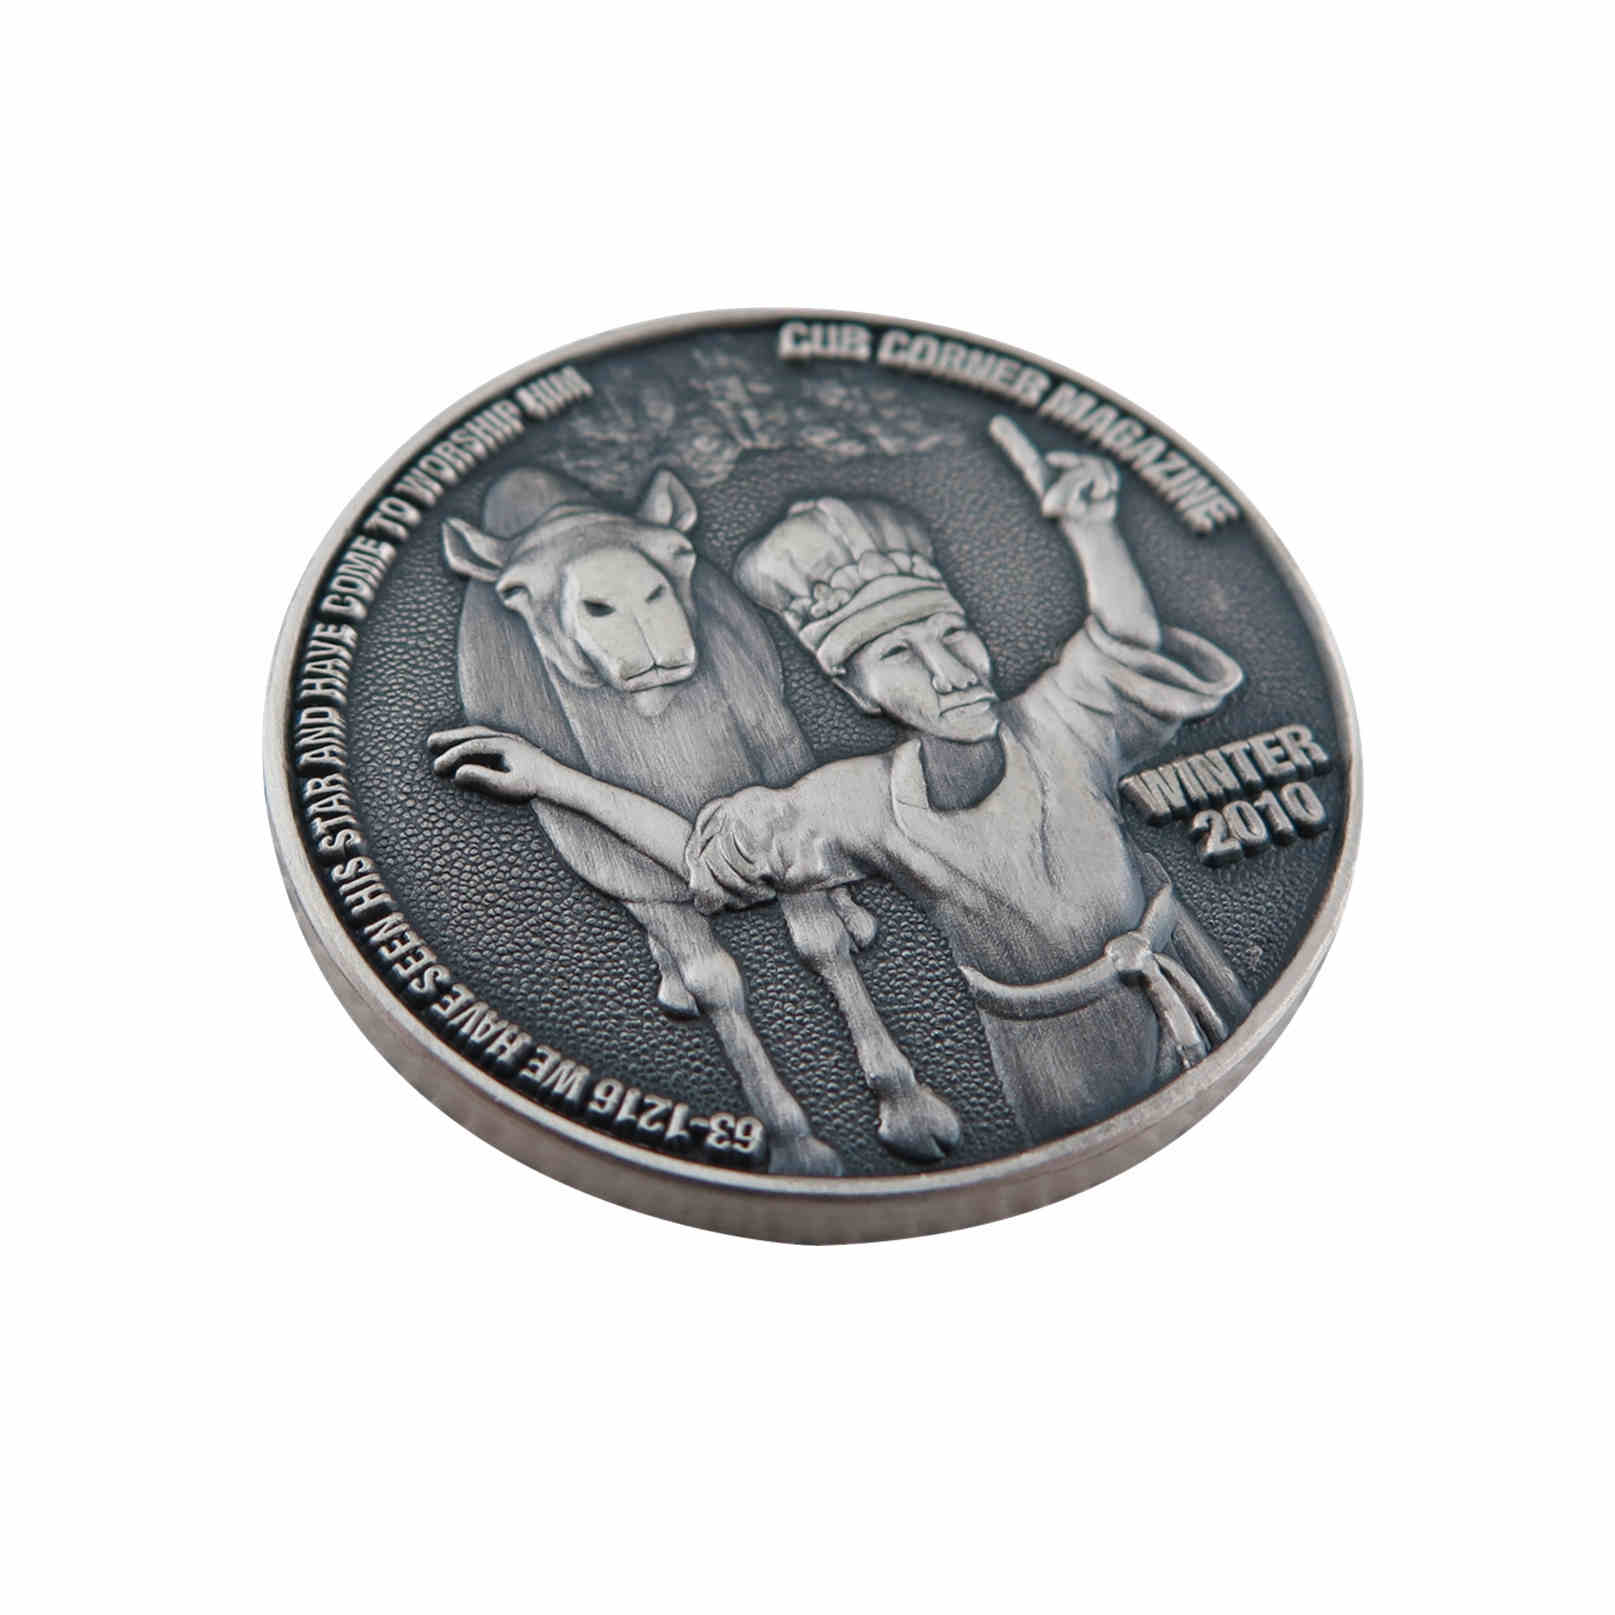 Replica Antique Silver Coins